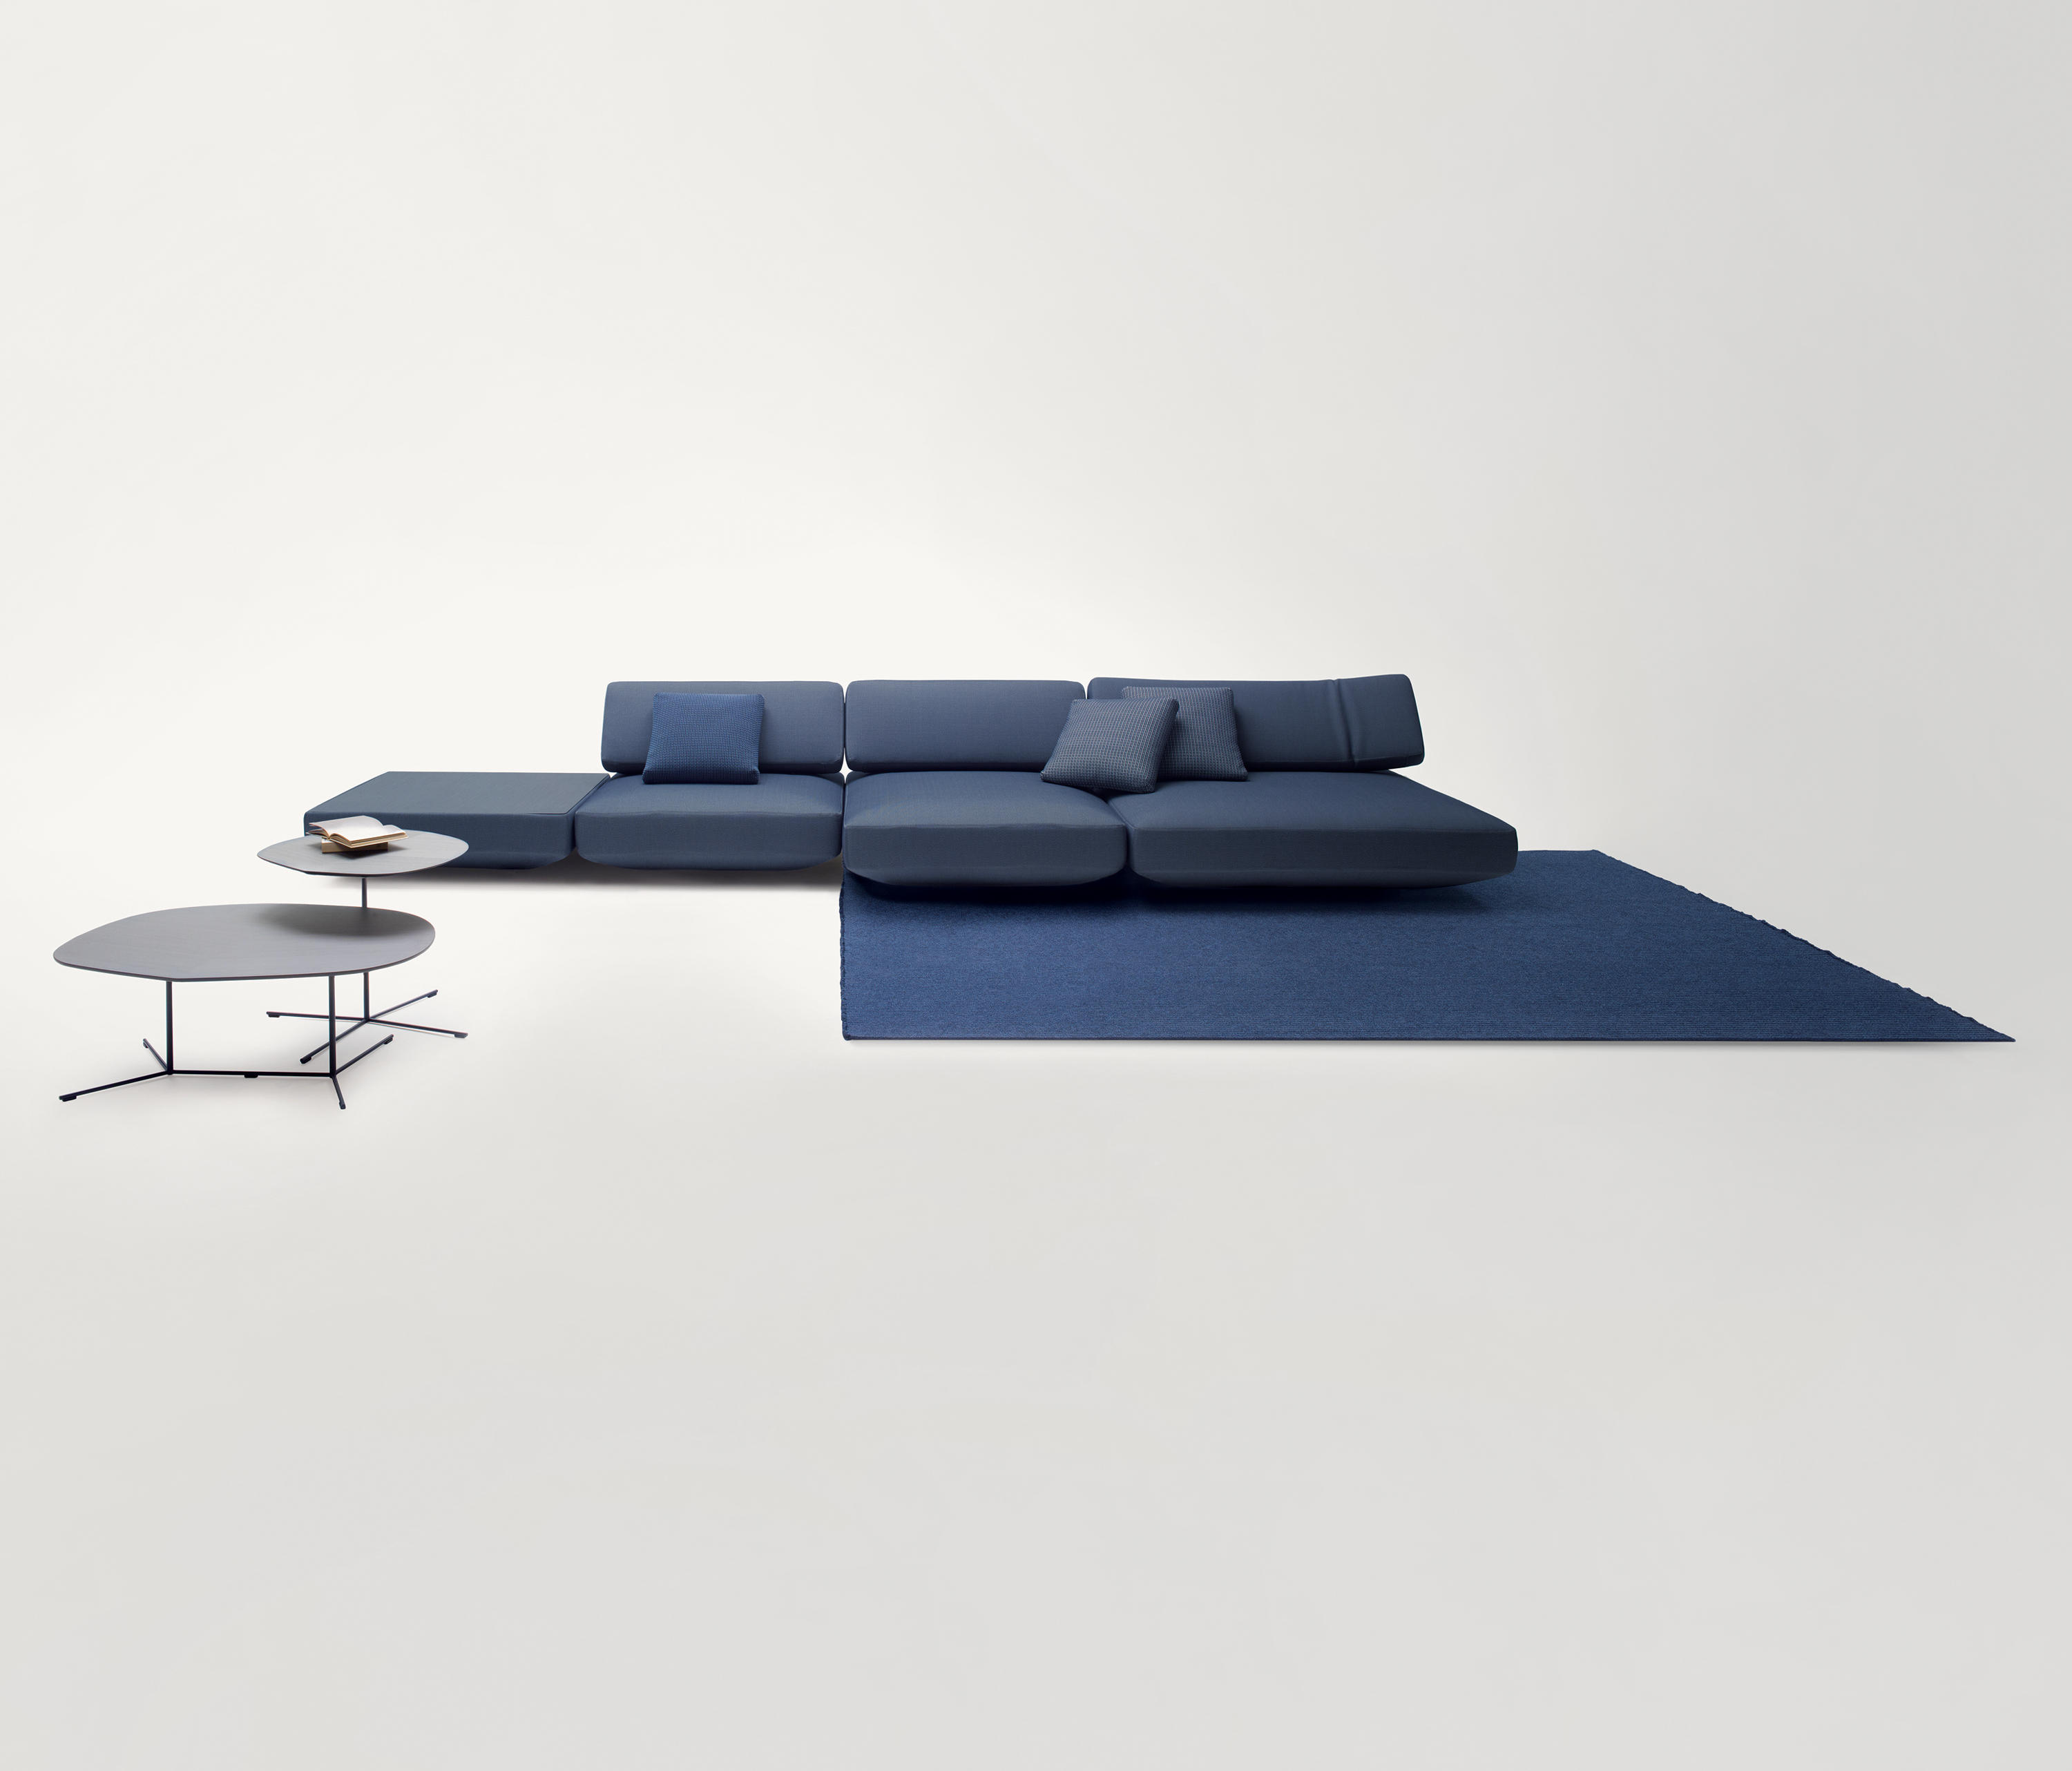 Agio Modular Sofa by Paola Lenti